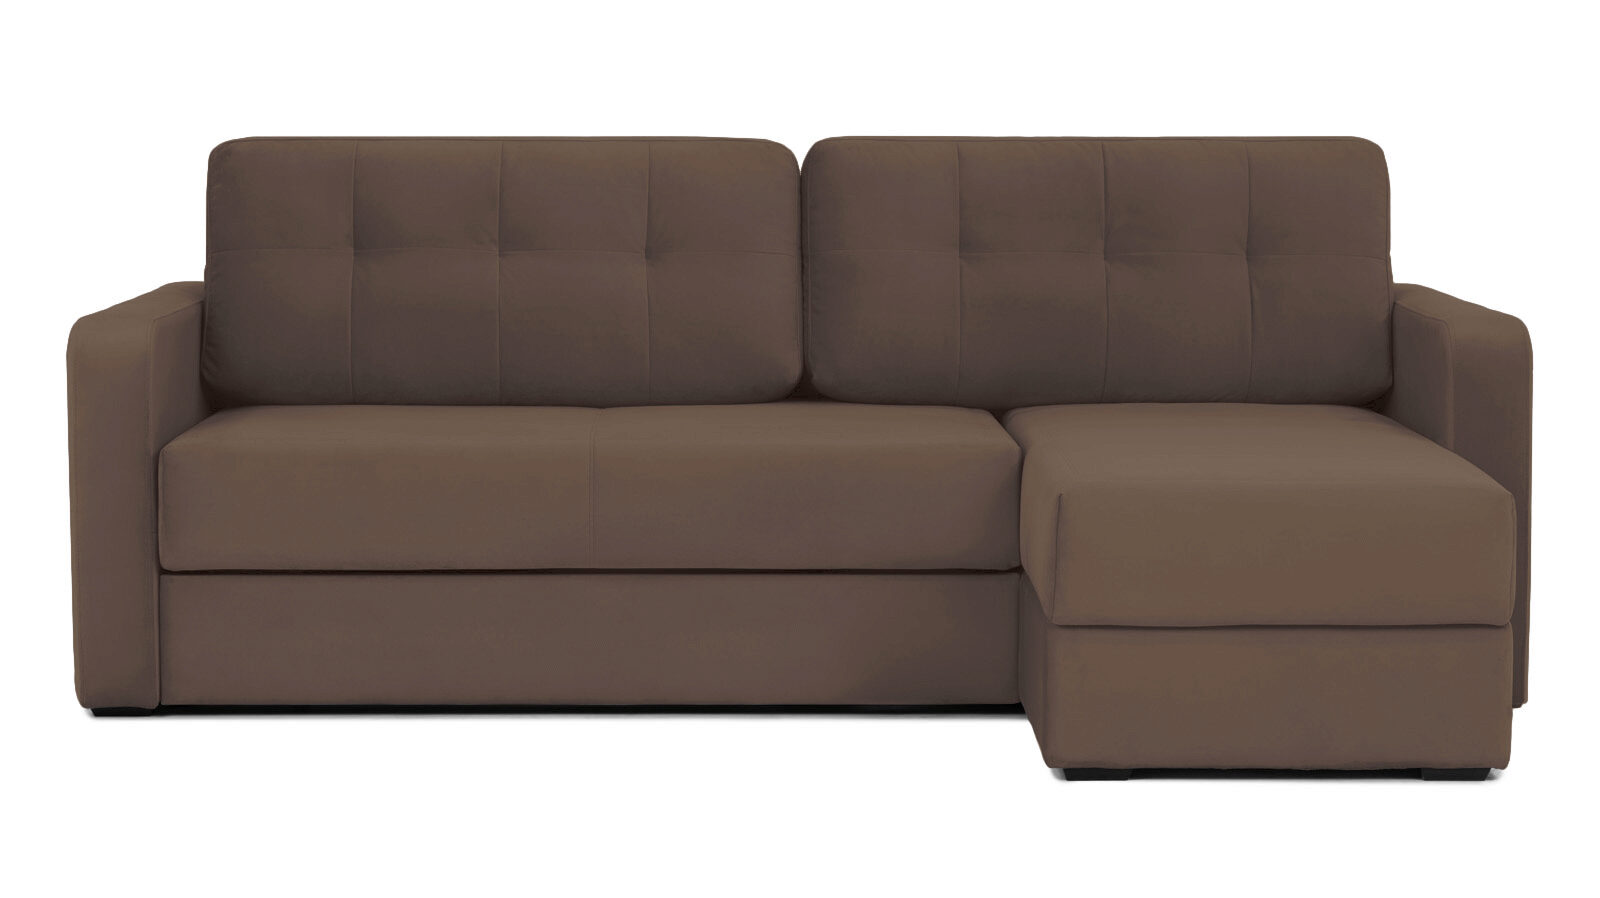 Угловой диван Loko Pro с широкими подлокотниками, с матрасом комбинированной жесткости